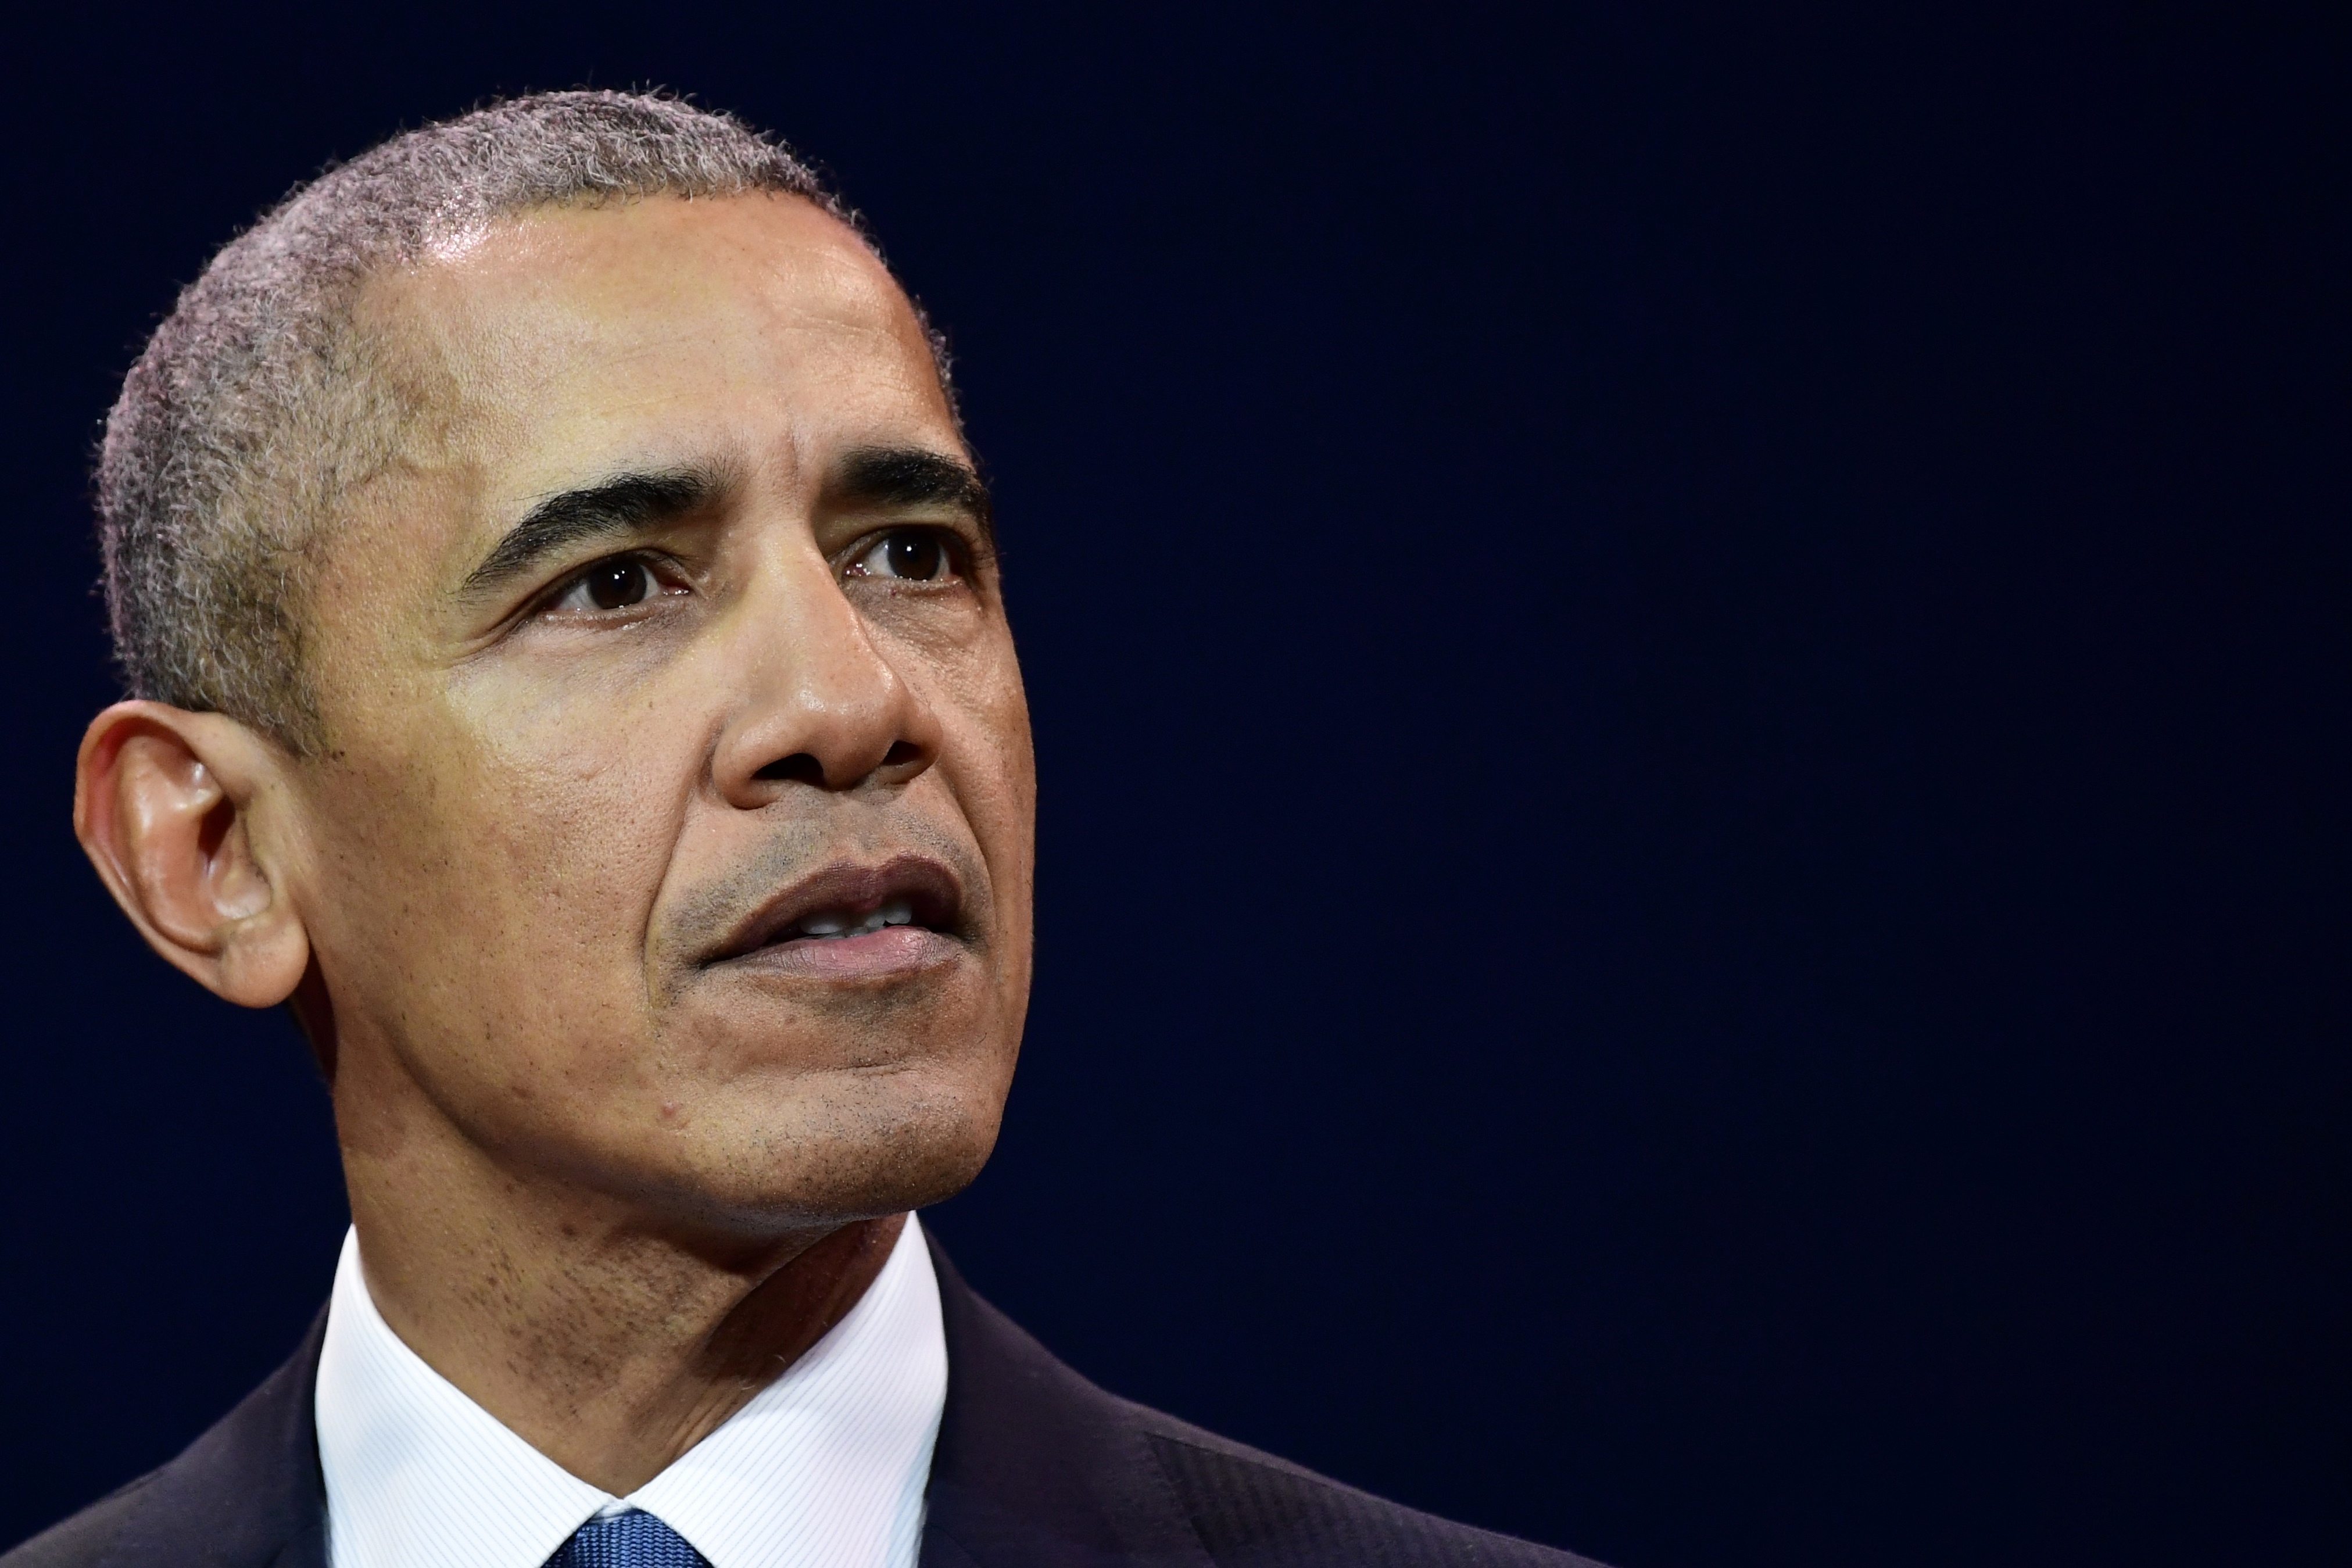 “Michelle me dejaría”: Obama descartó un posible cargo en el Gobierno de Biden